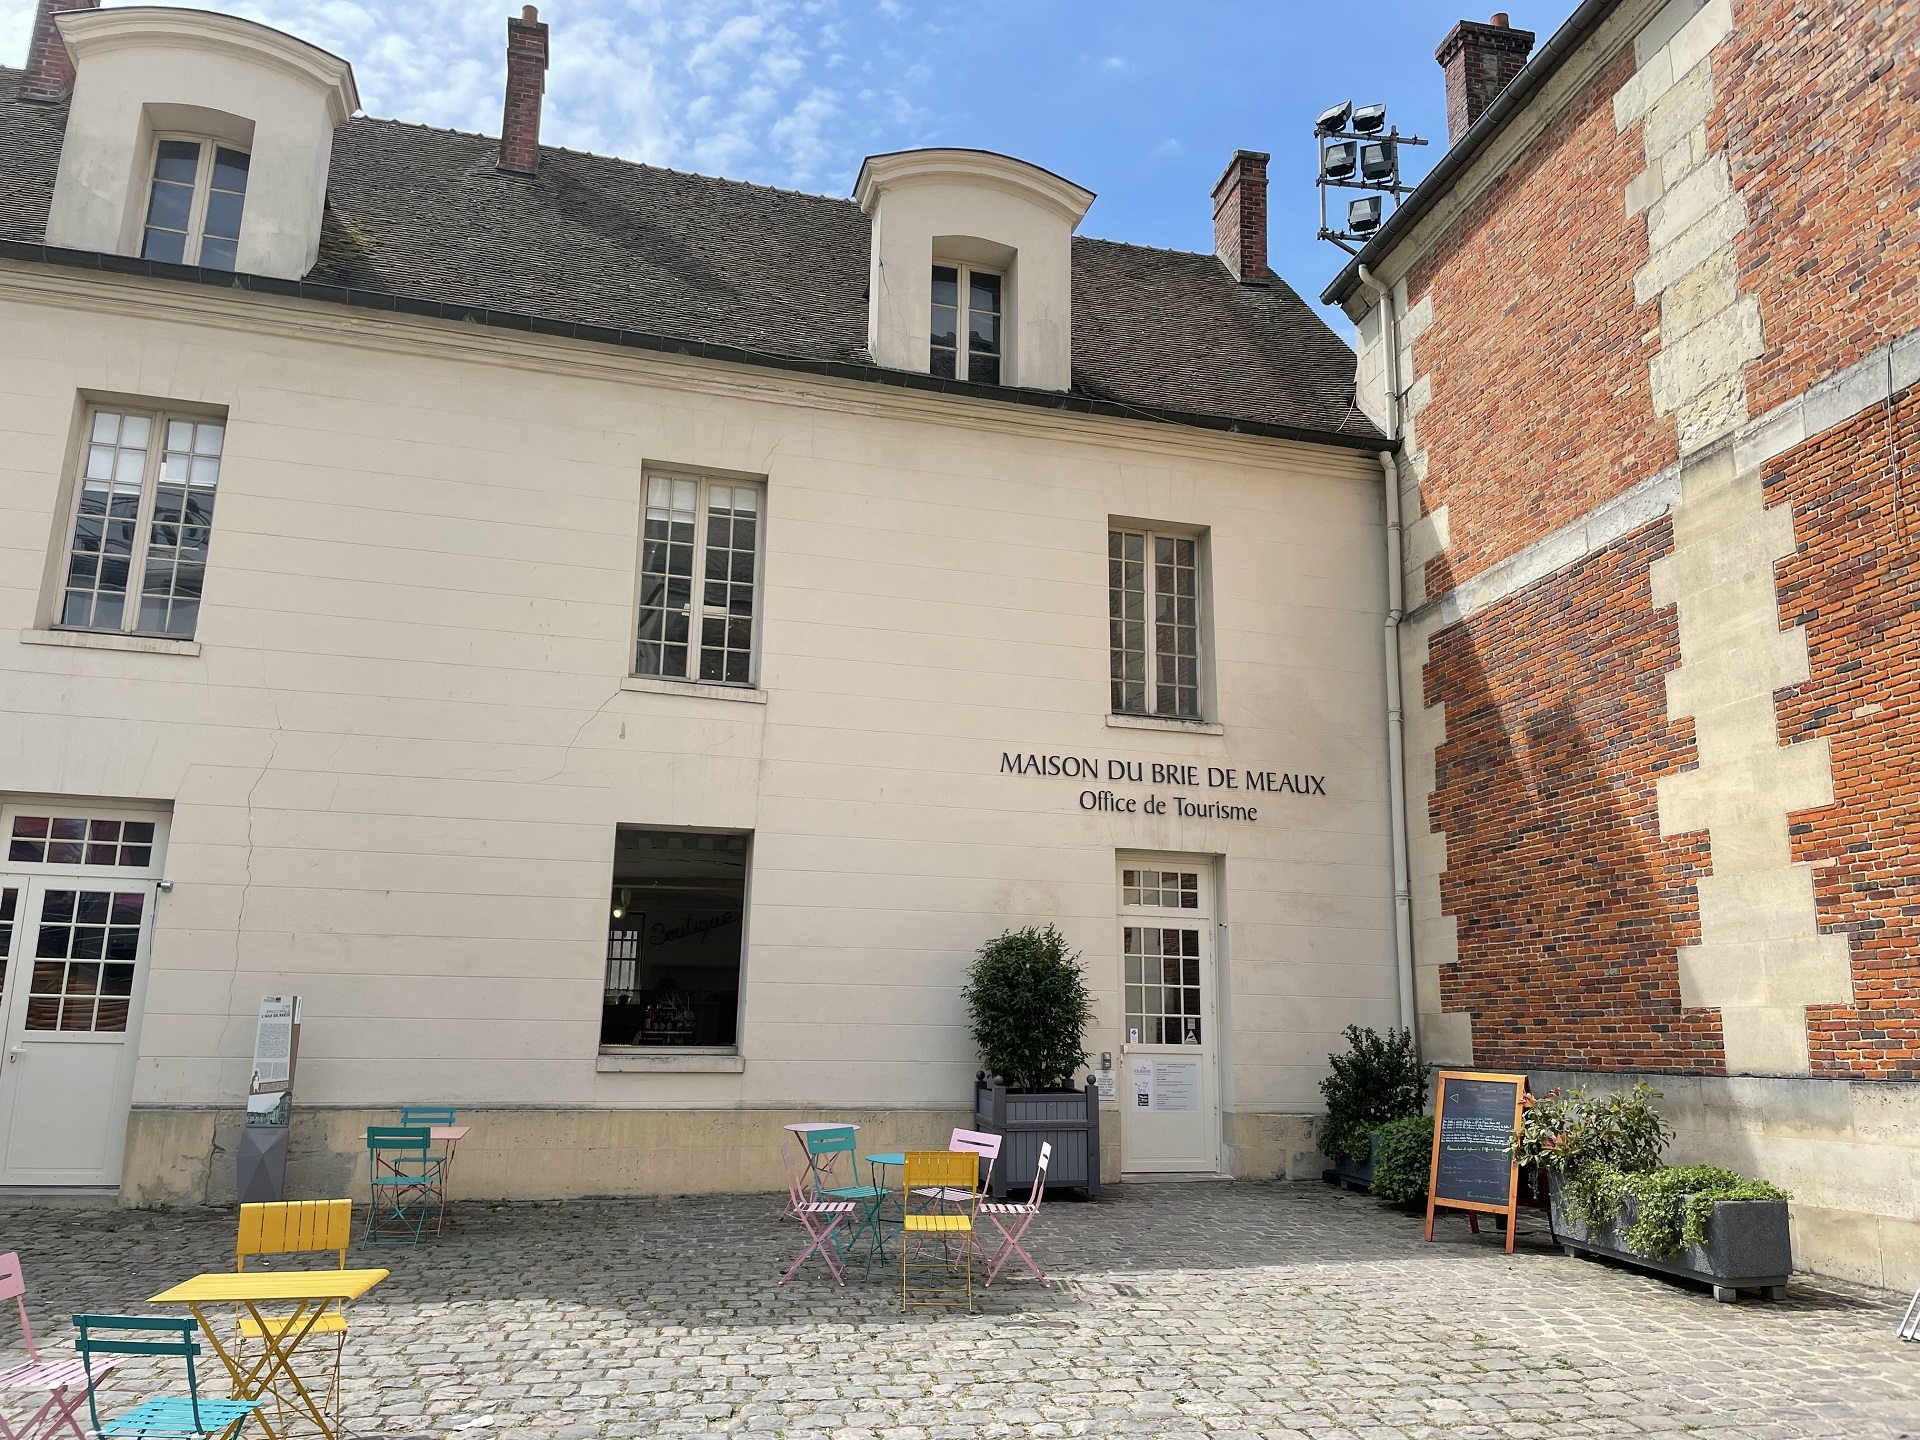 Façade de l'Office de Tourisme et de la Maison du Brie de Meaux